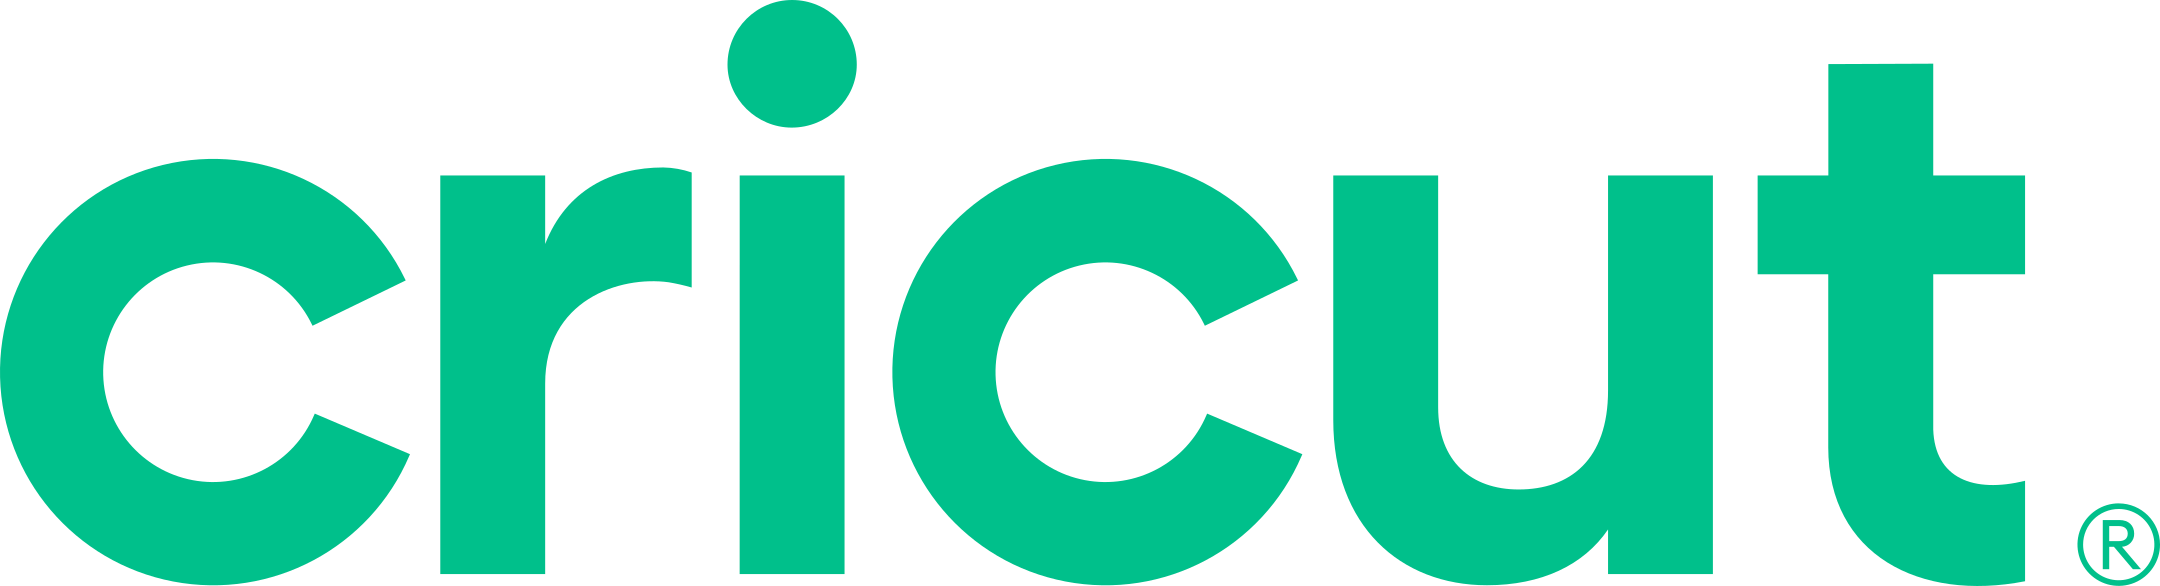 cricut logo 1 - Cricut Logo